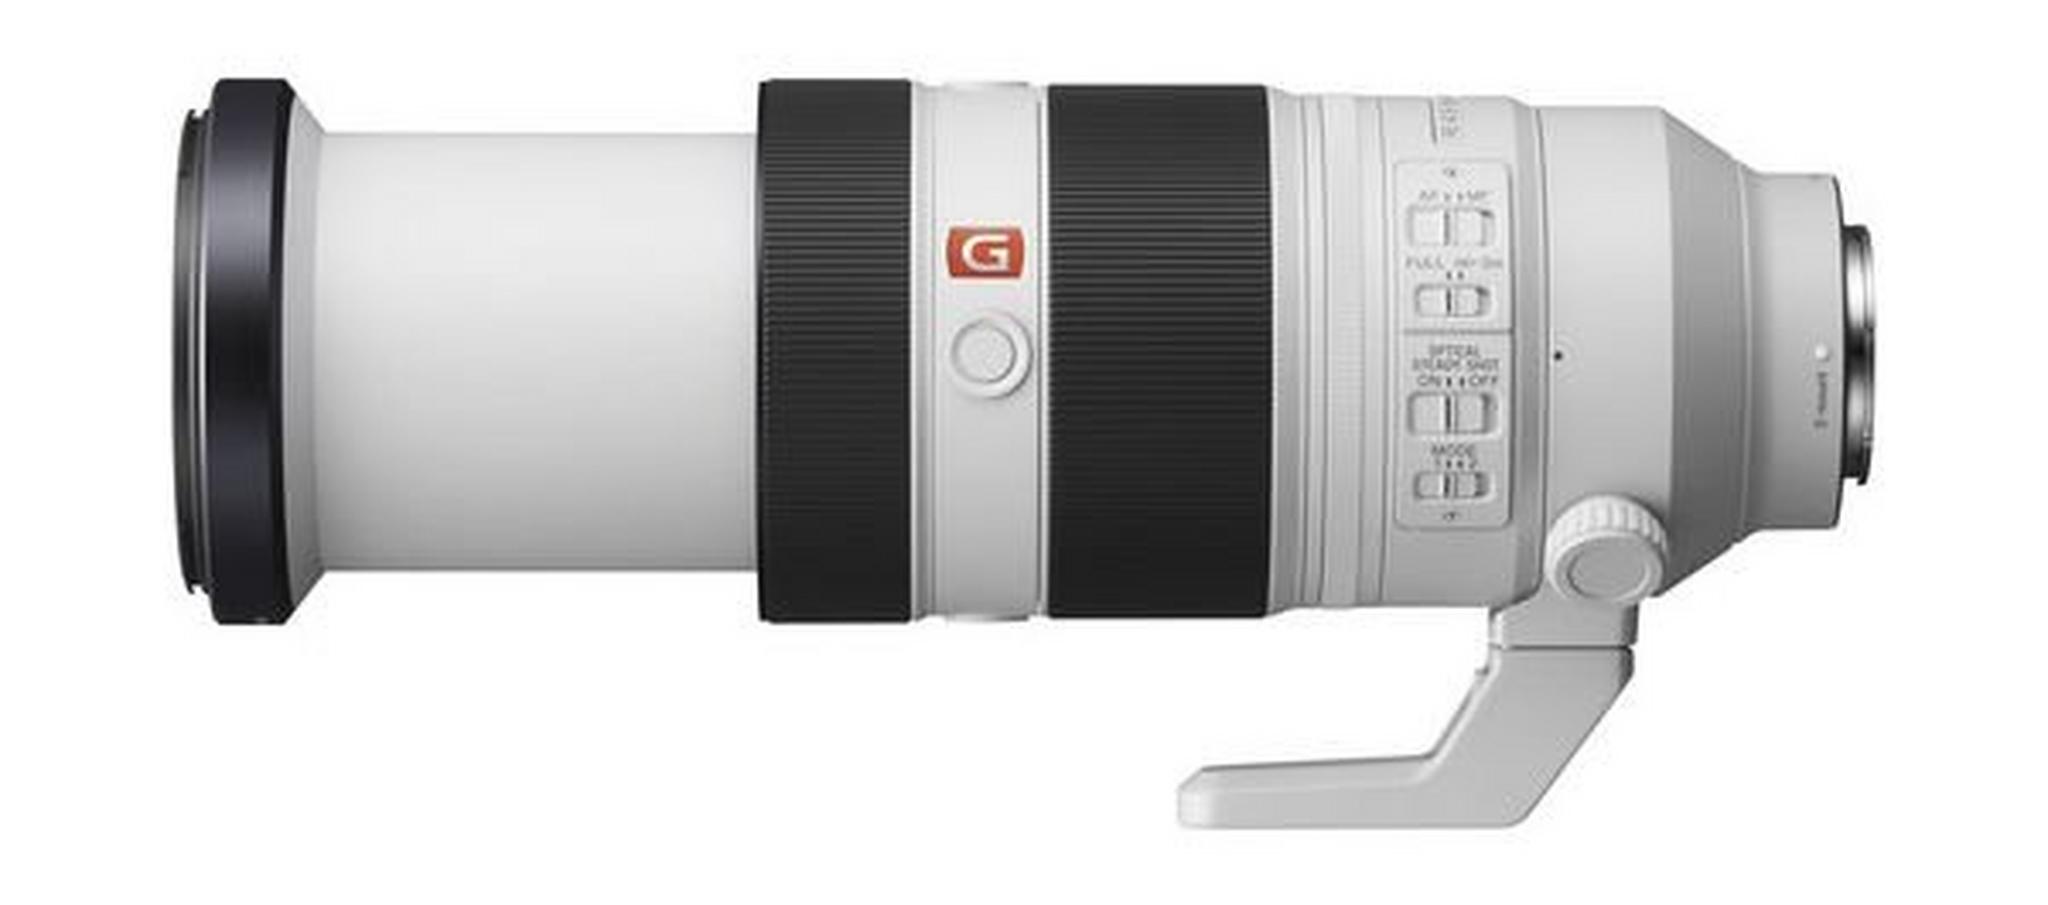 Sony 100-400mm F/4.5-5.6 GM OSS Autofocus Lens for DSLR Camera (SEL100400GM) - Black